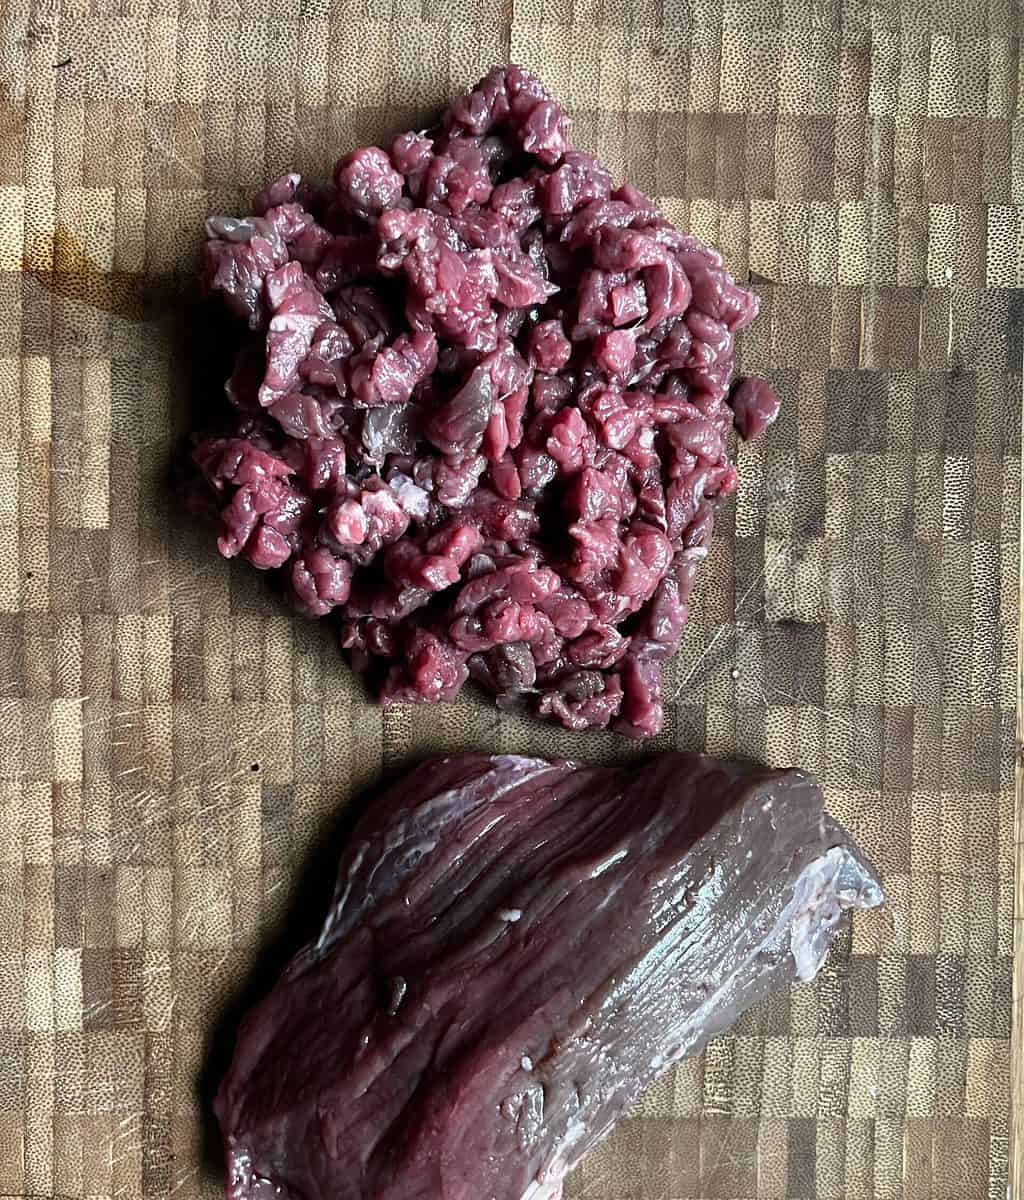 chopped steak